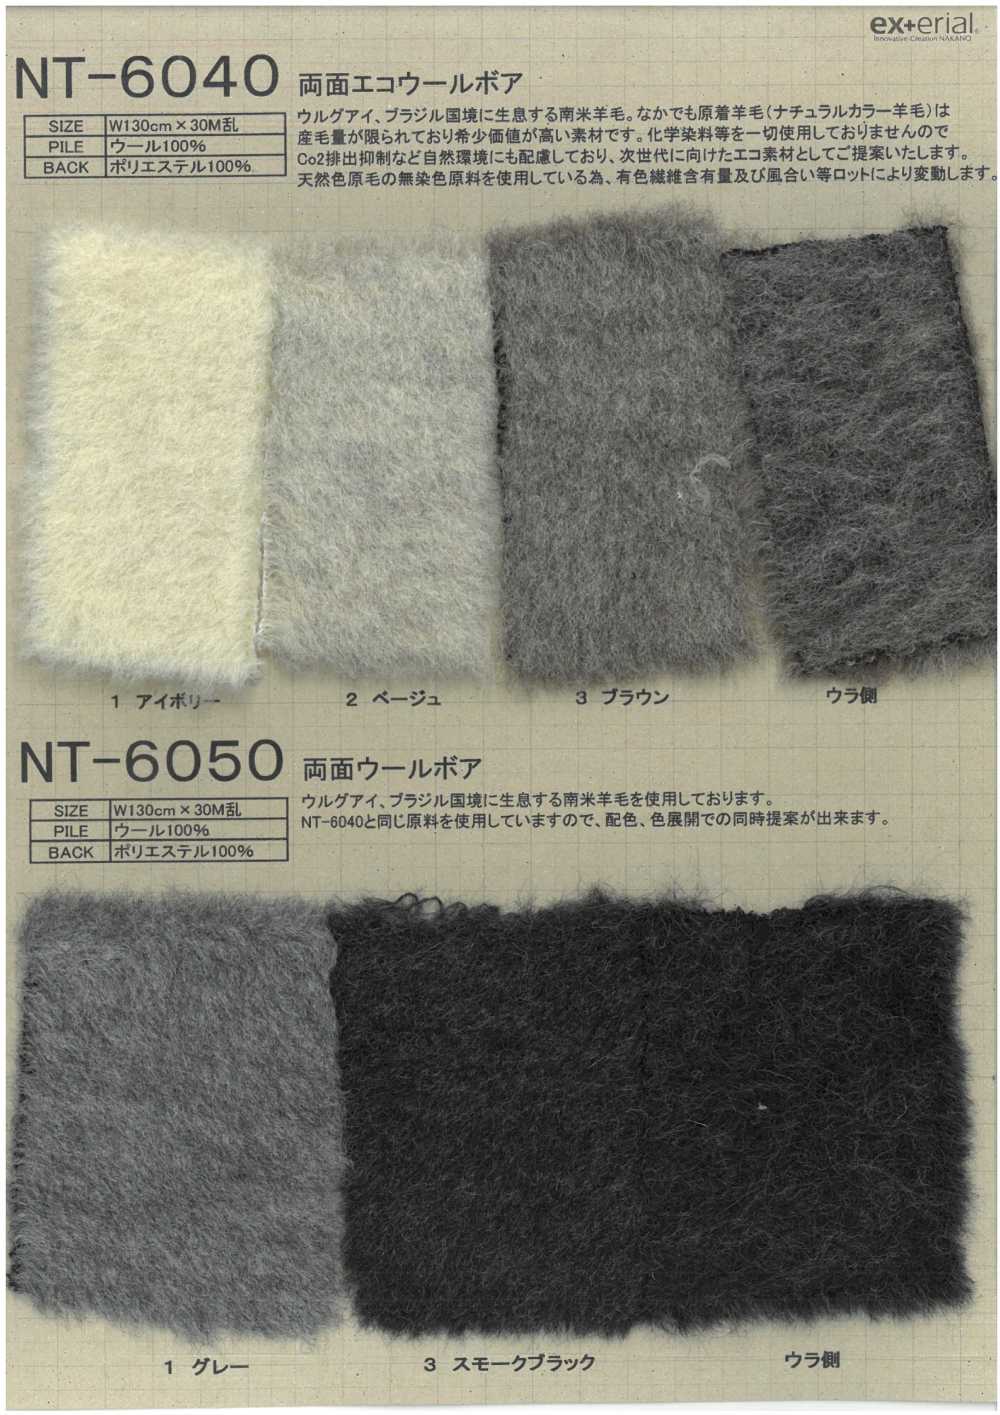 NT-6040 Craft Fur [Boa En Laine écologique Double Face][Fabrication De Textile] Industrie Du Jersey Nakano